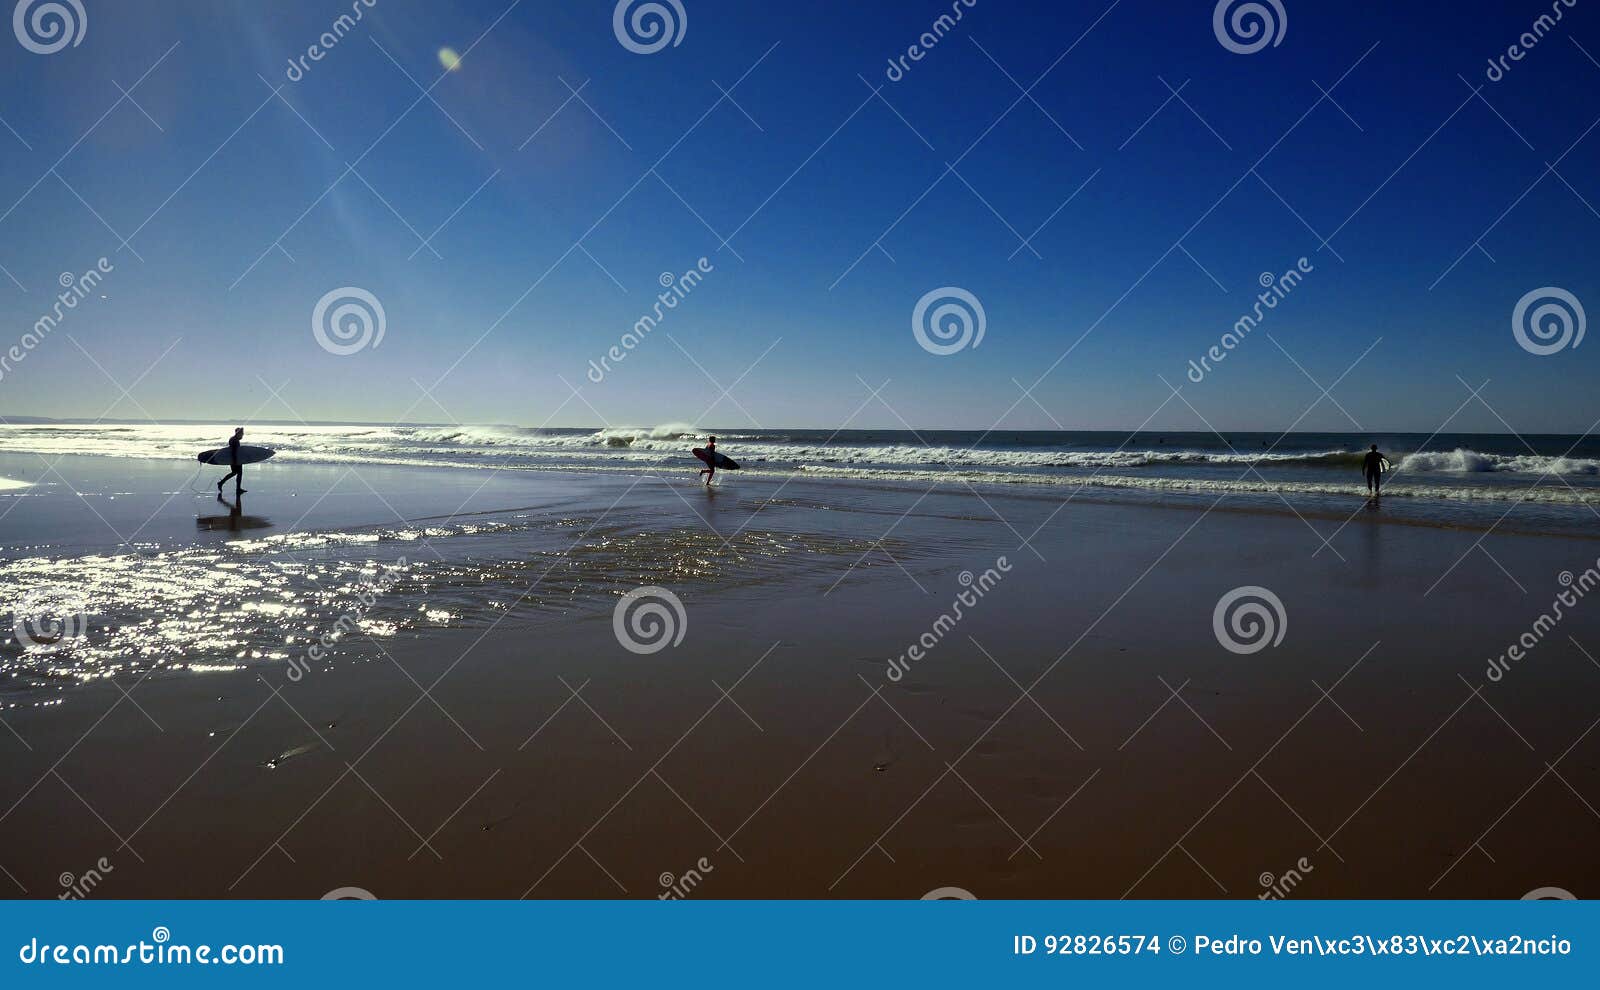 beach surf